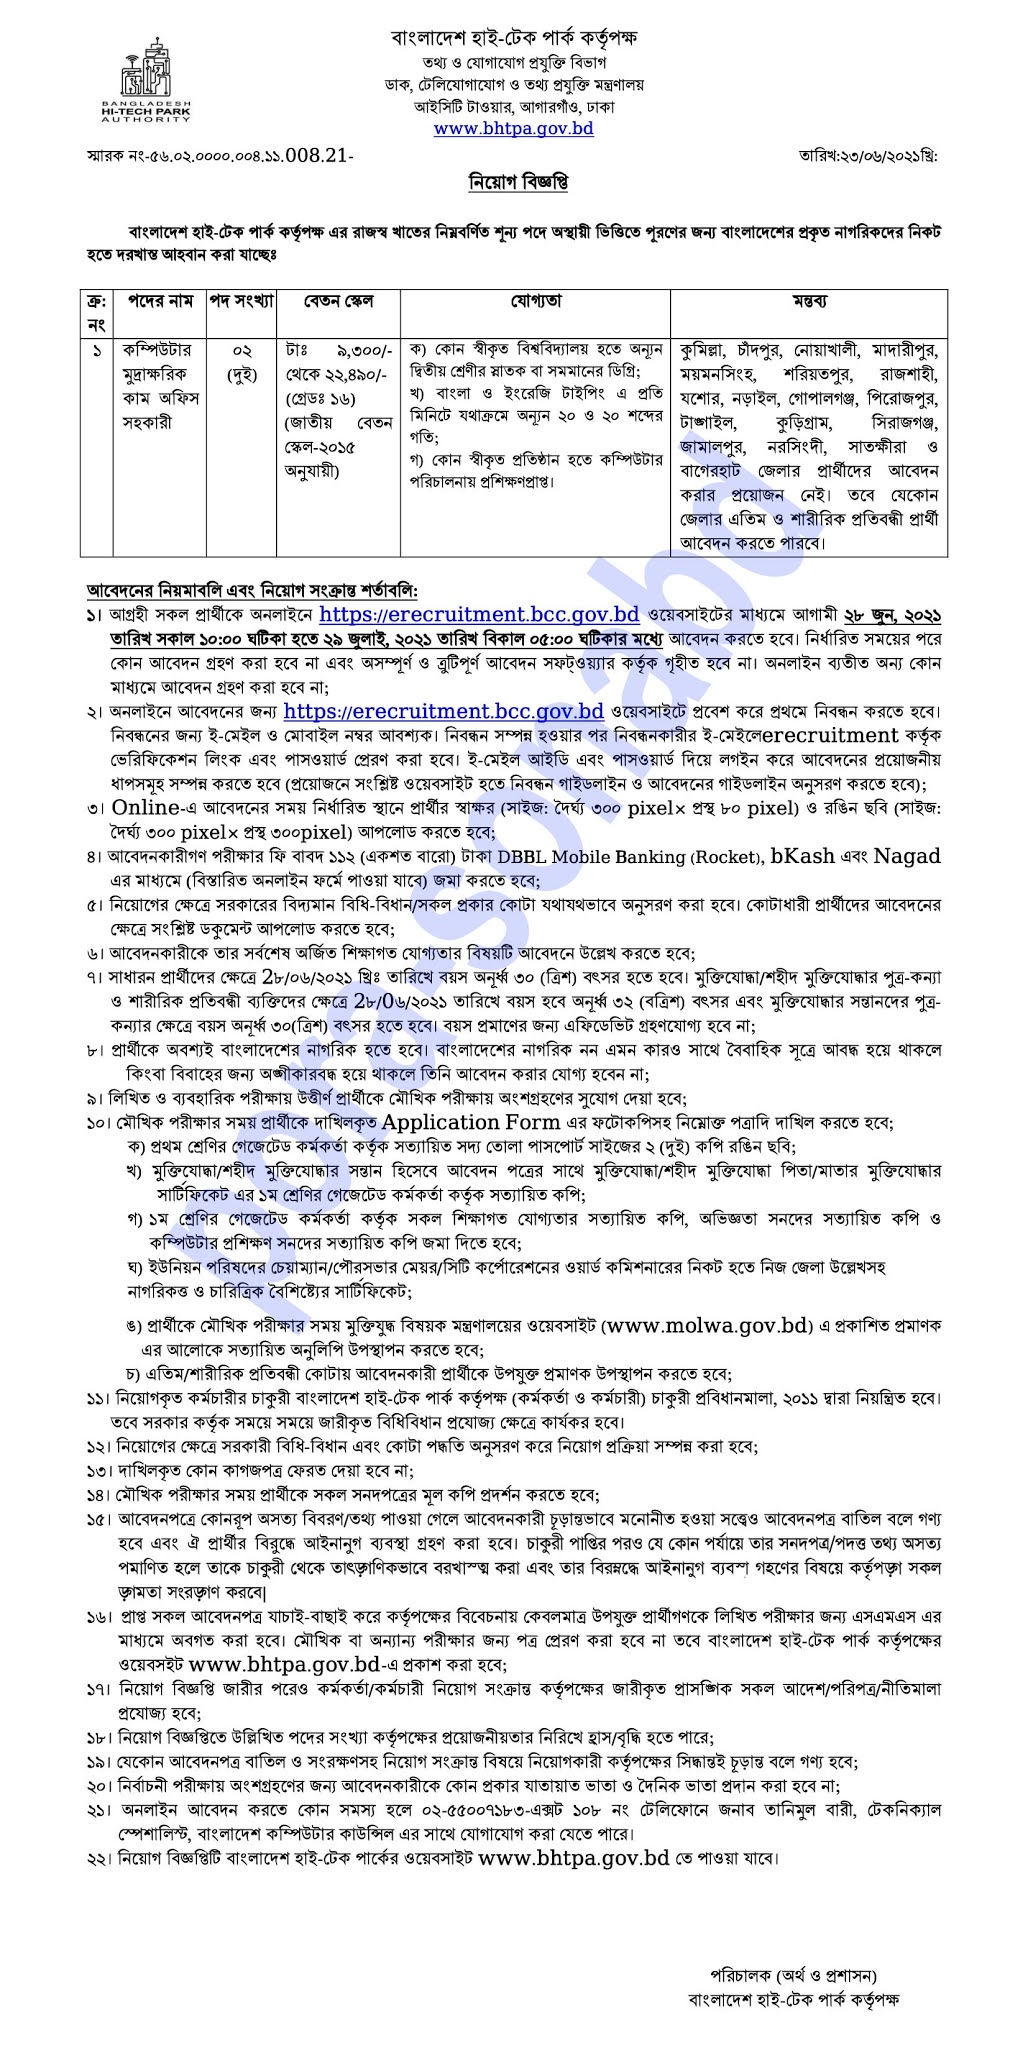 bd High Tech Park Job Circular-বাংলাদেশ হাইটেক পার্ক নিয়োগ বিজ্ঞপ্তি